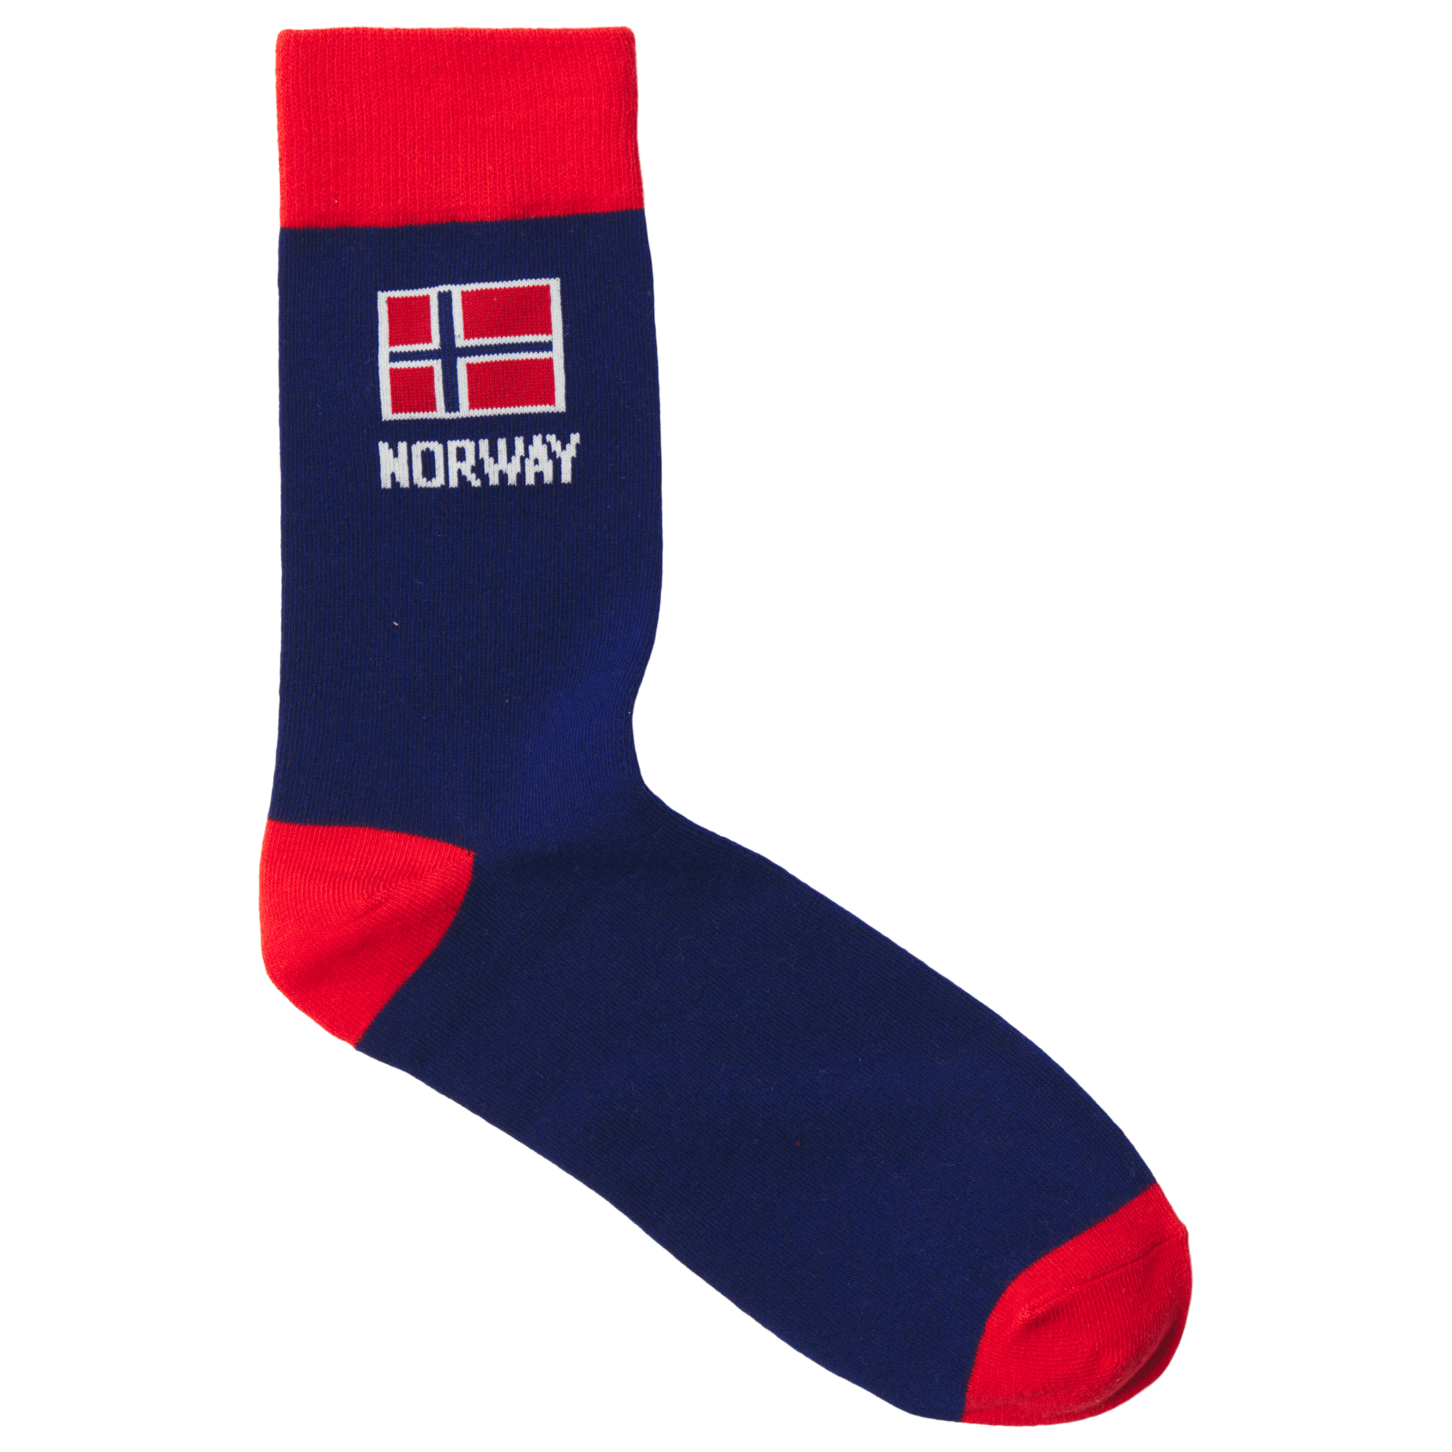 Tilbud: North Pro Norge sokk kr 50 på Sport Outlet